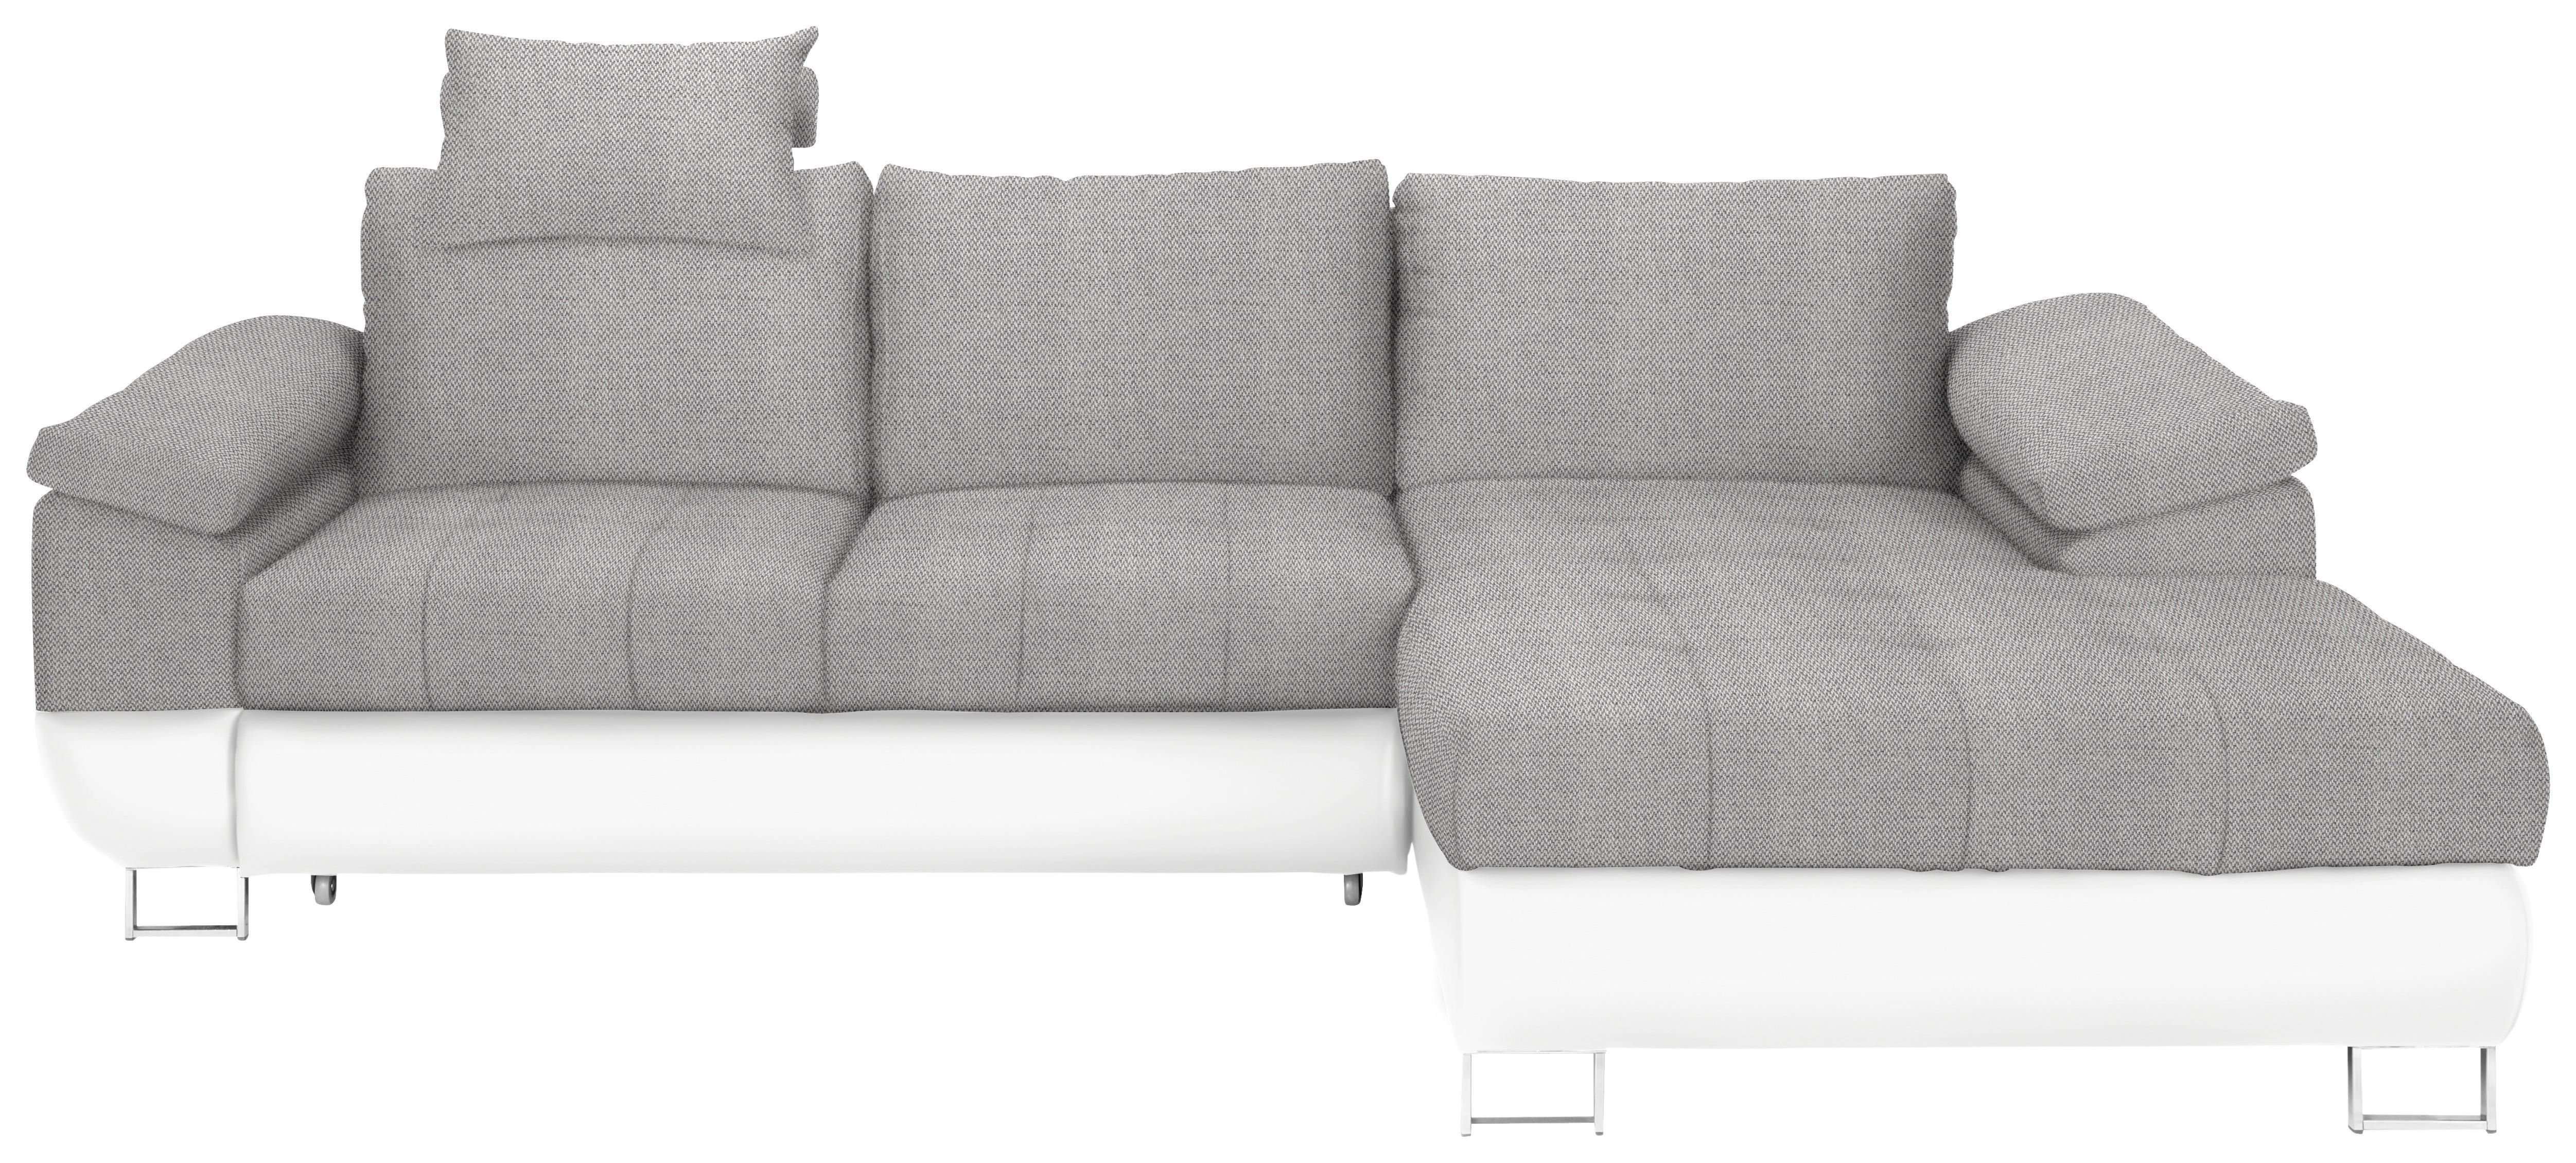 Wohnlandschaft in Grau/Weiß mit Bettfunktion - Chromfarben/Weiß, MODERN, Kunststoff/Textil (268/170cm) - Based